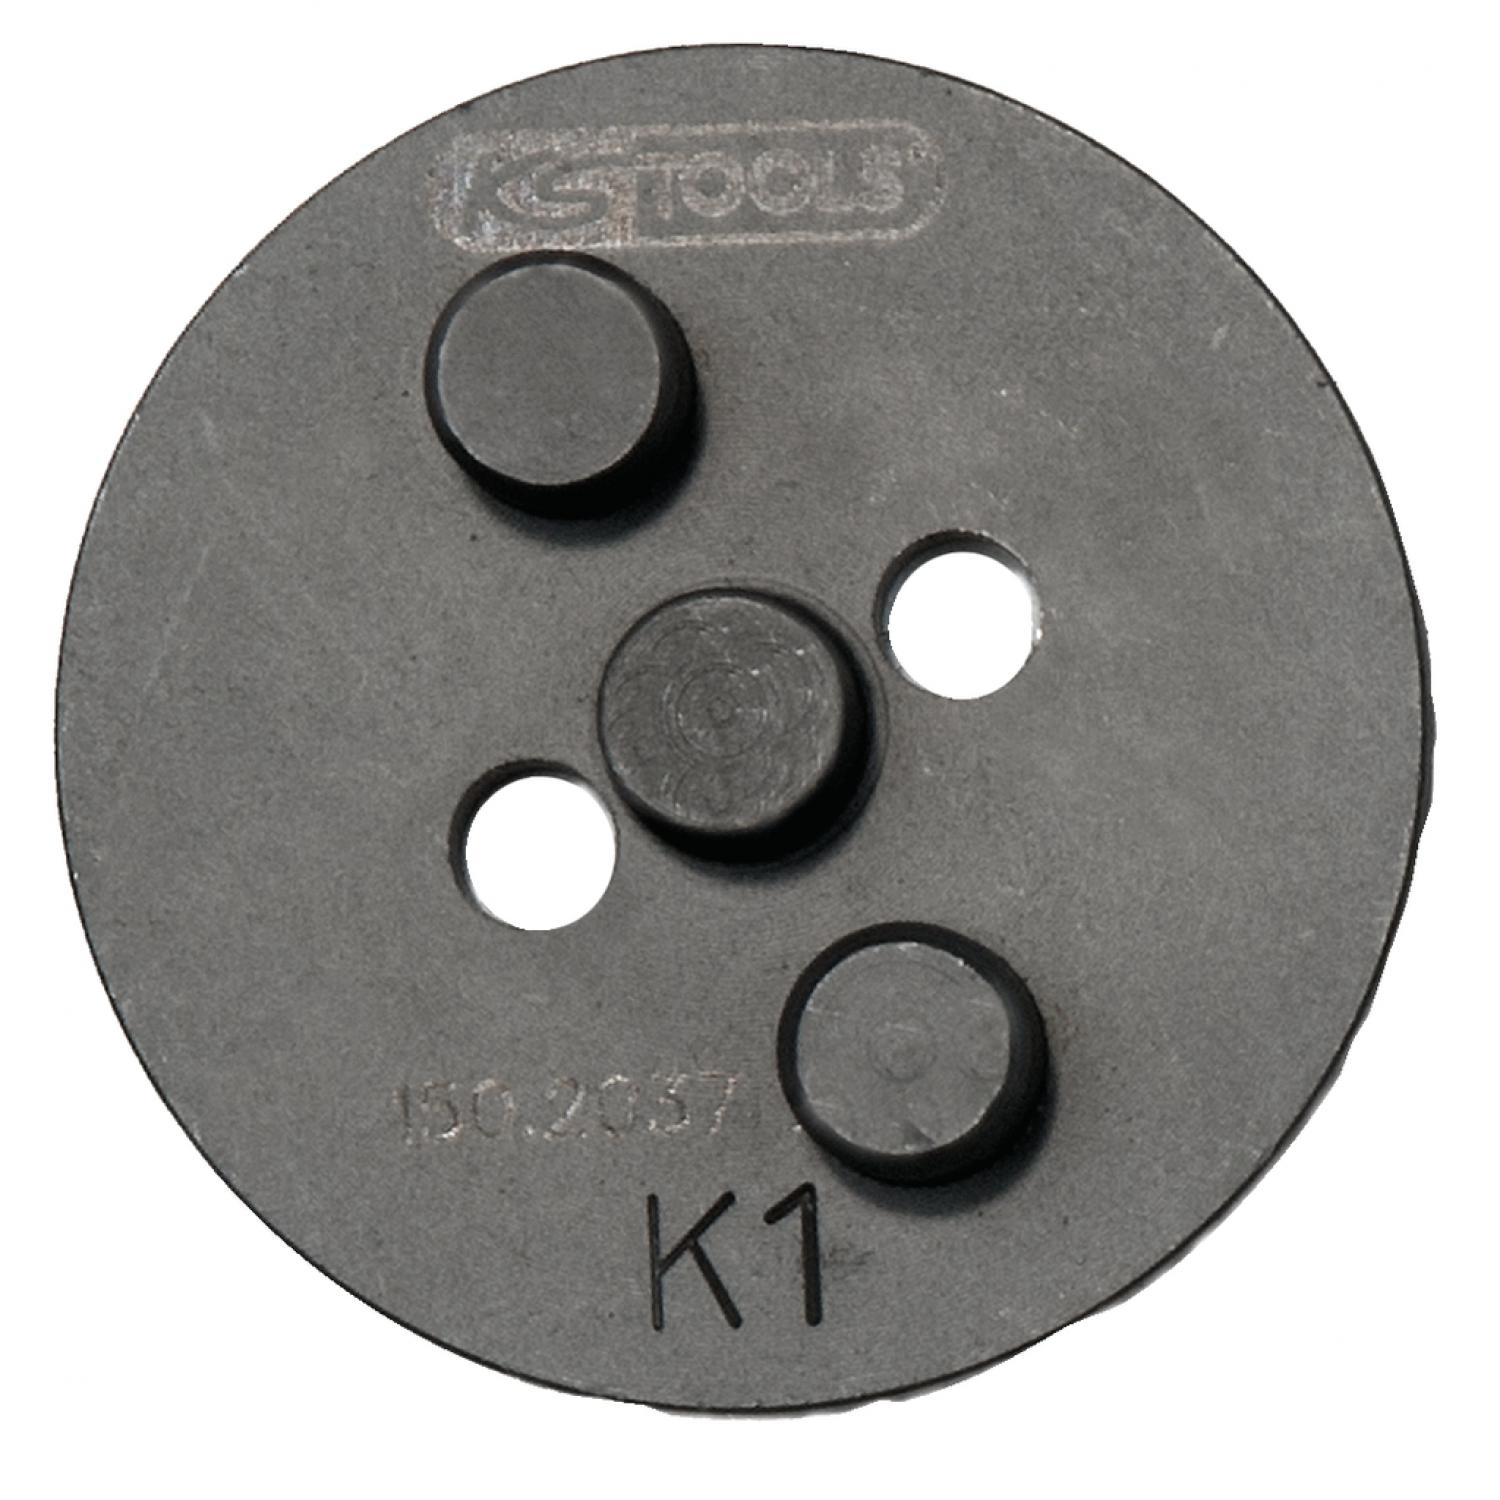 Адаптер для инструмента для поршня тормозного цилиндра №K1, Ø 54 мм